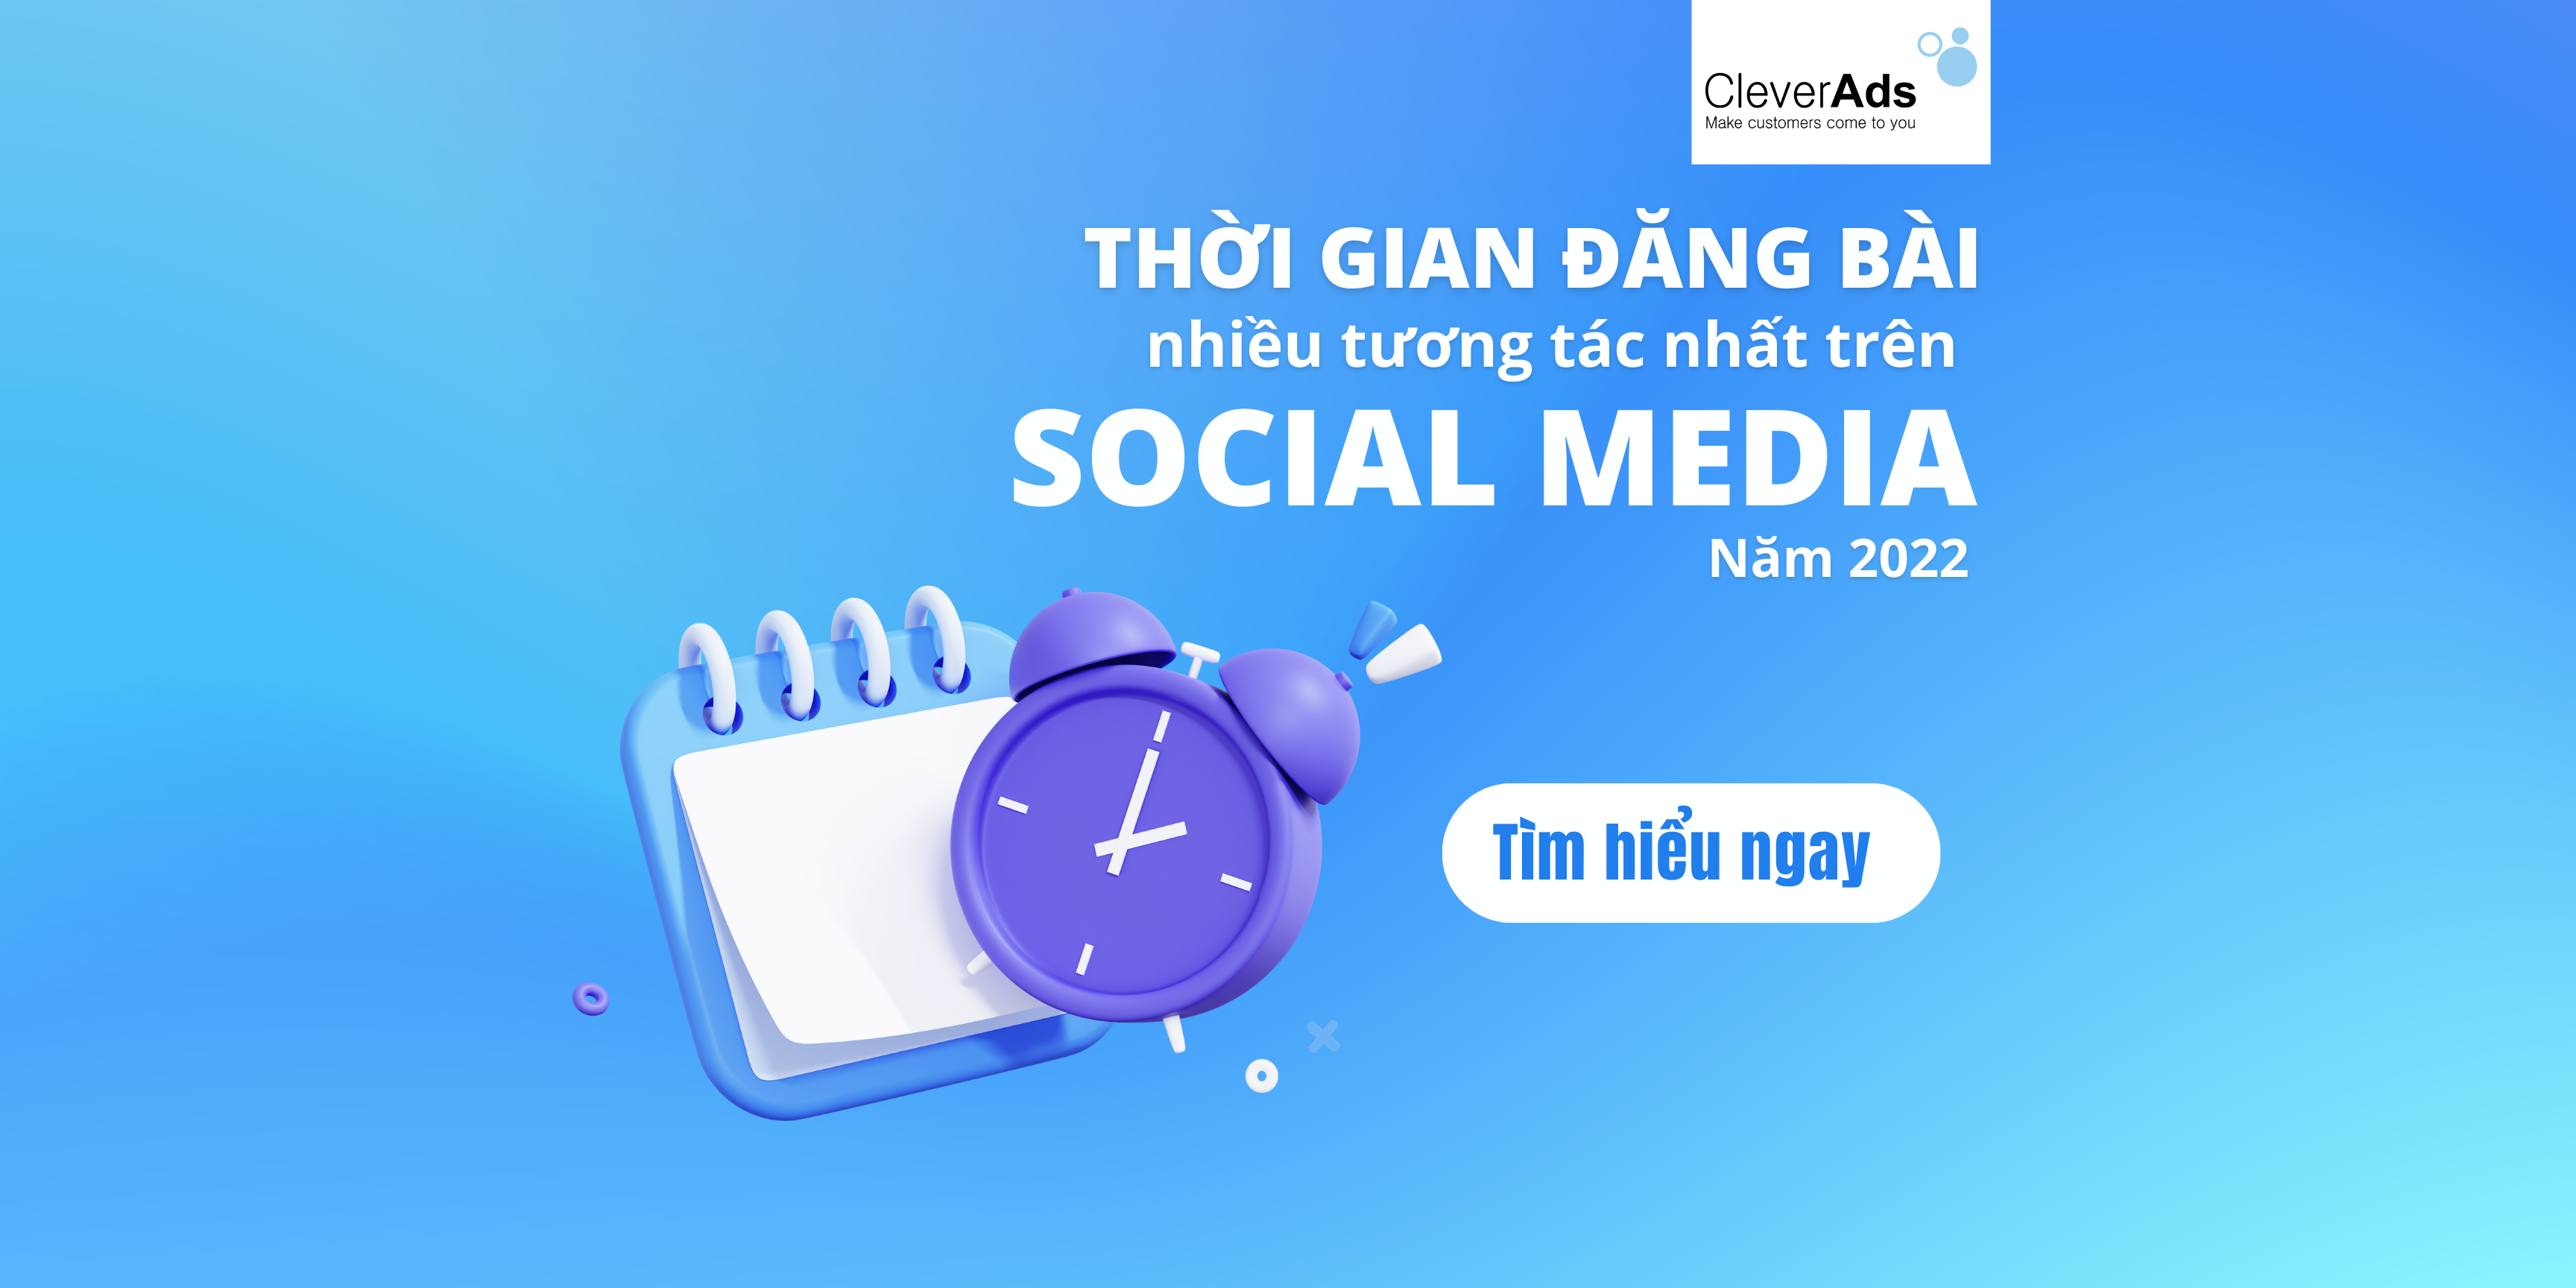 Thời gian đăng bài nhiều tương tác nhất trên Social Media năm 2022